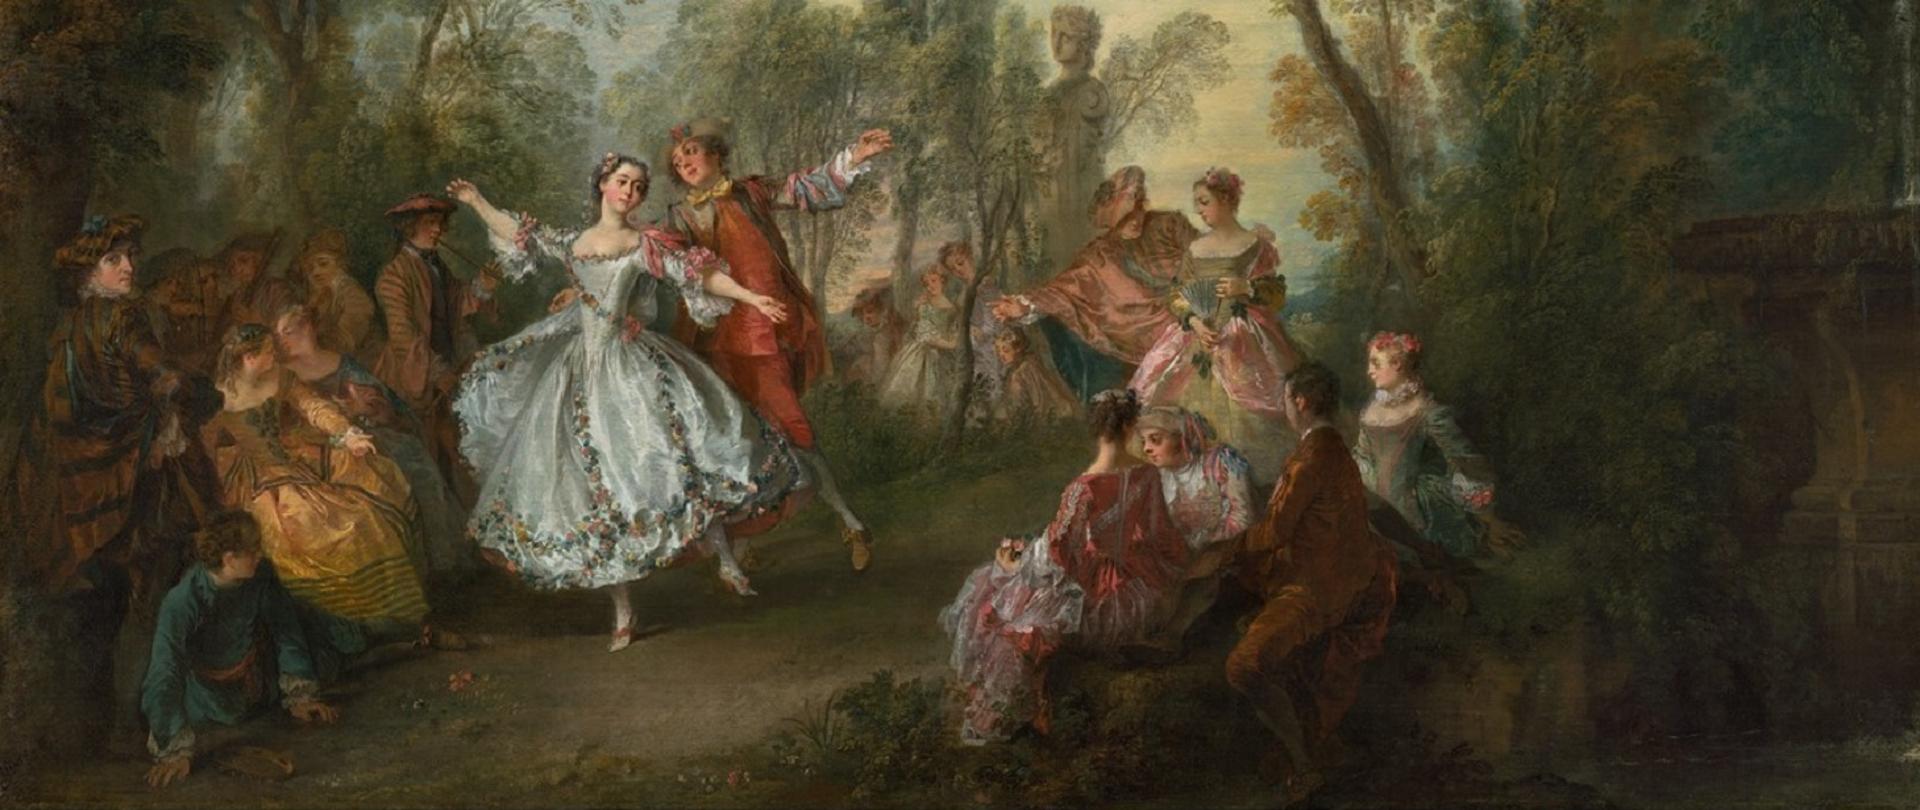 Barokowy obraz przedstawiający tańczącą odświętnie ubraną parę otoczoną grupą ludzi. Scena rozgrywa się na świeżym powietrzu, wśród drzew.